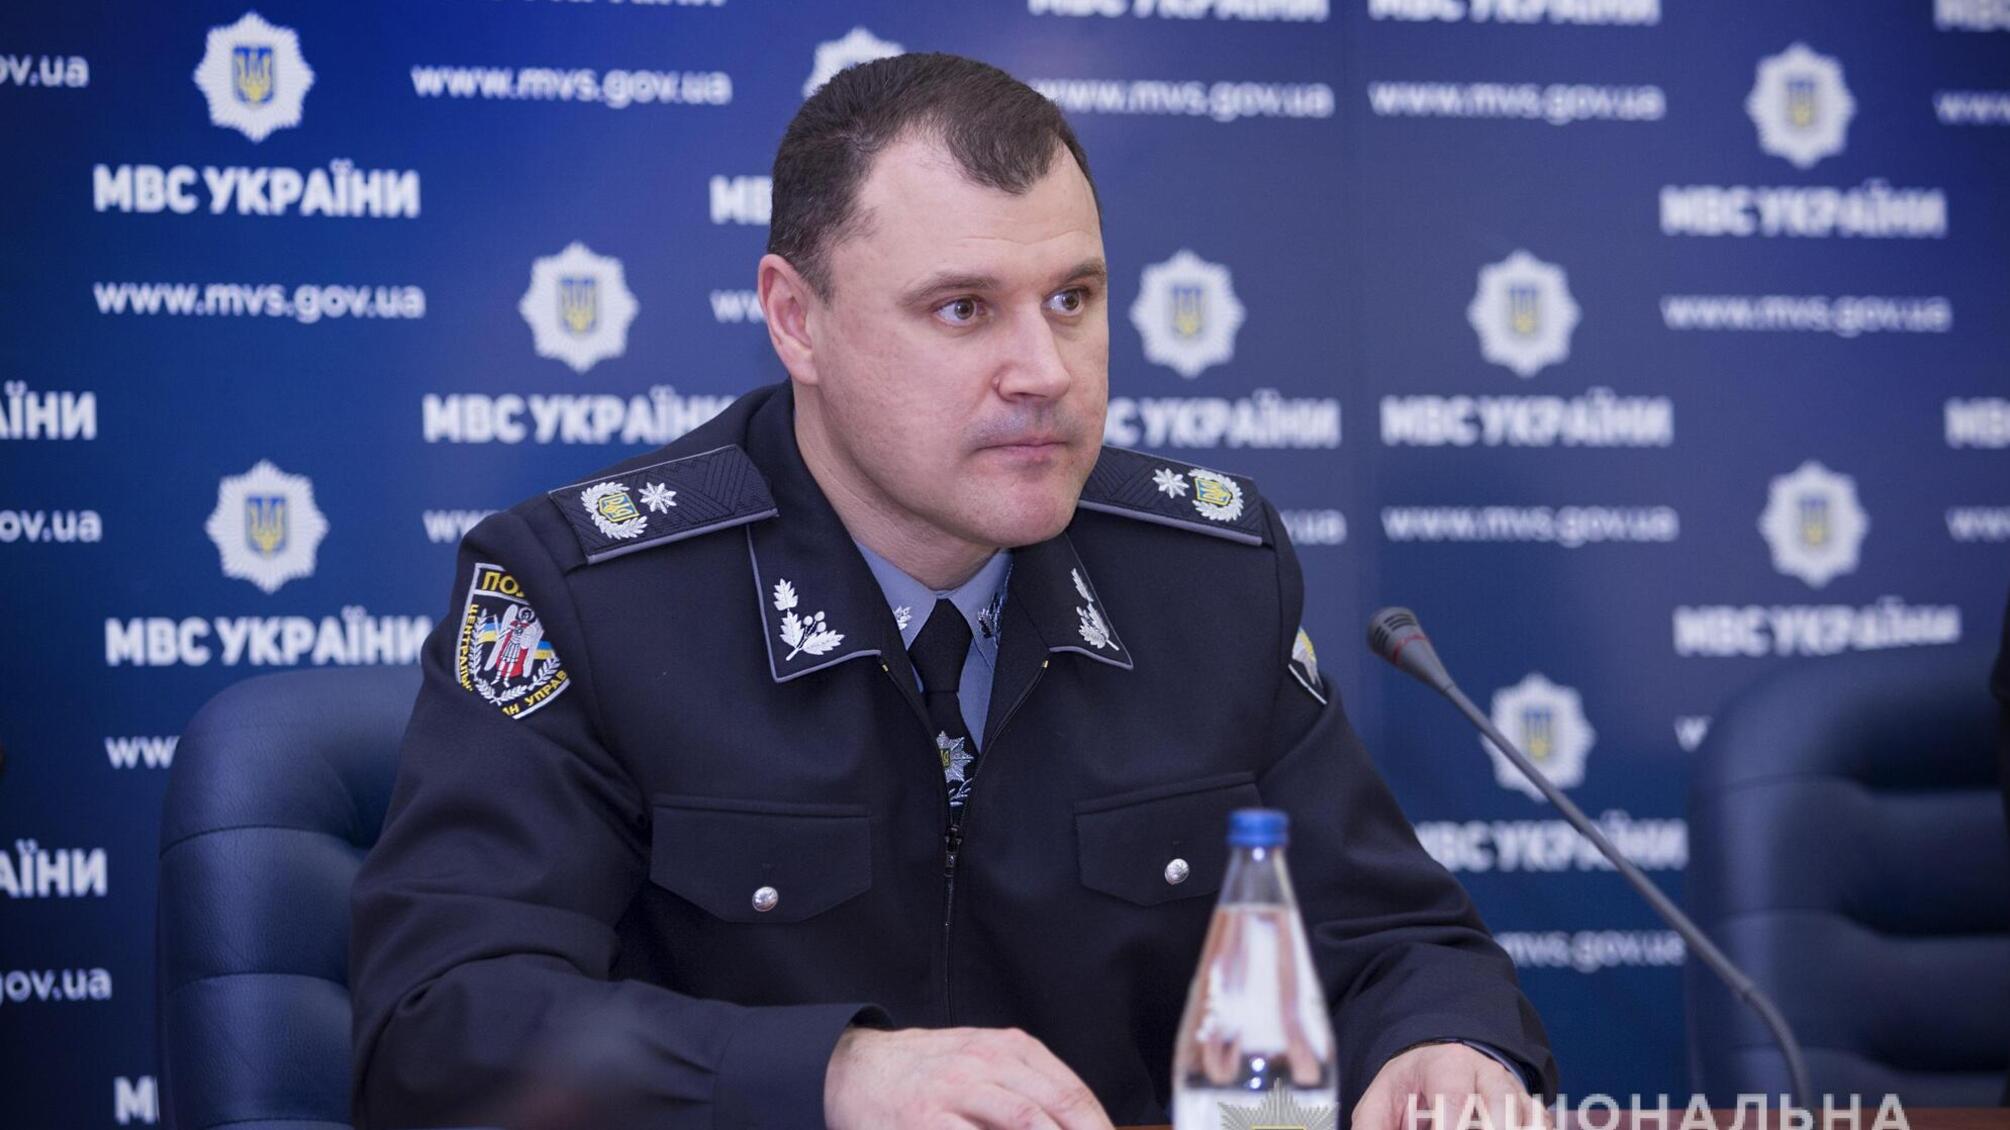 Дотримання дисципліни та законності є неухильним для всіх поліцейських, незалежно від звання та посад  – Ігор Клименко